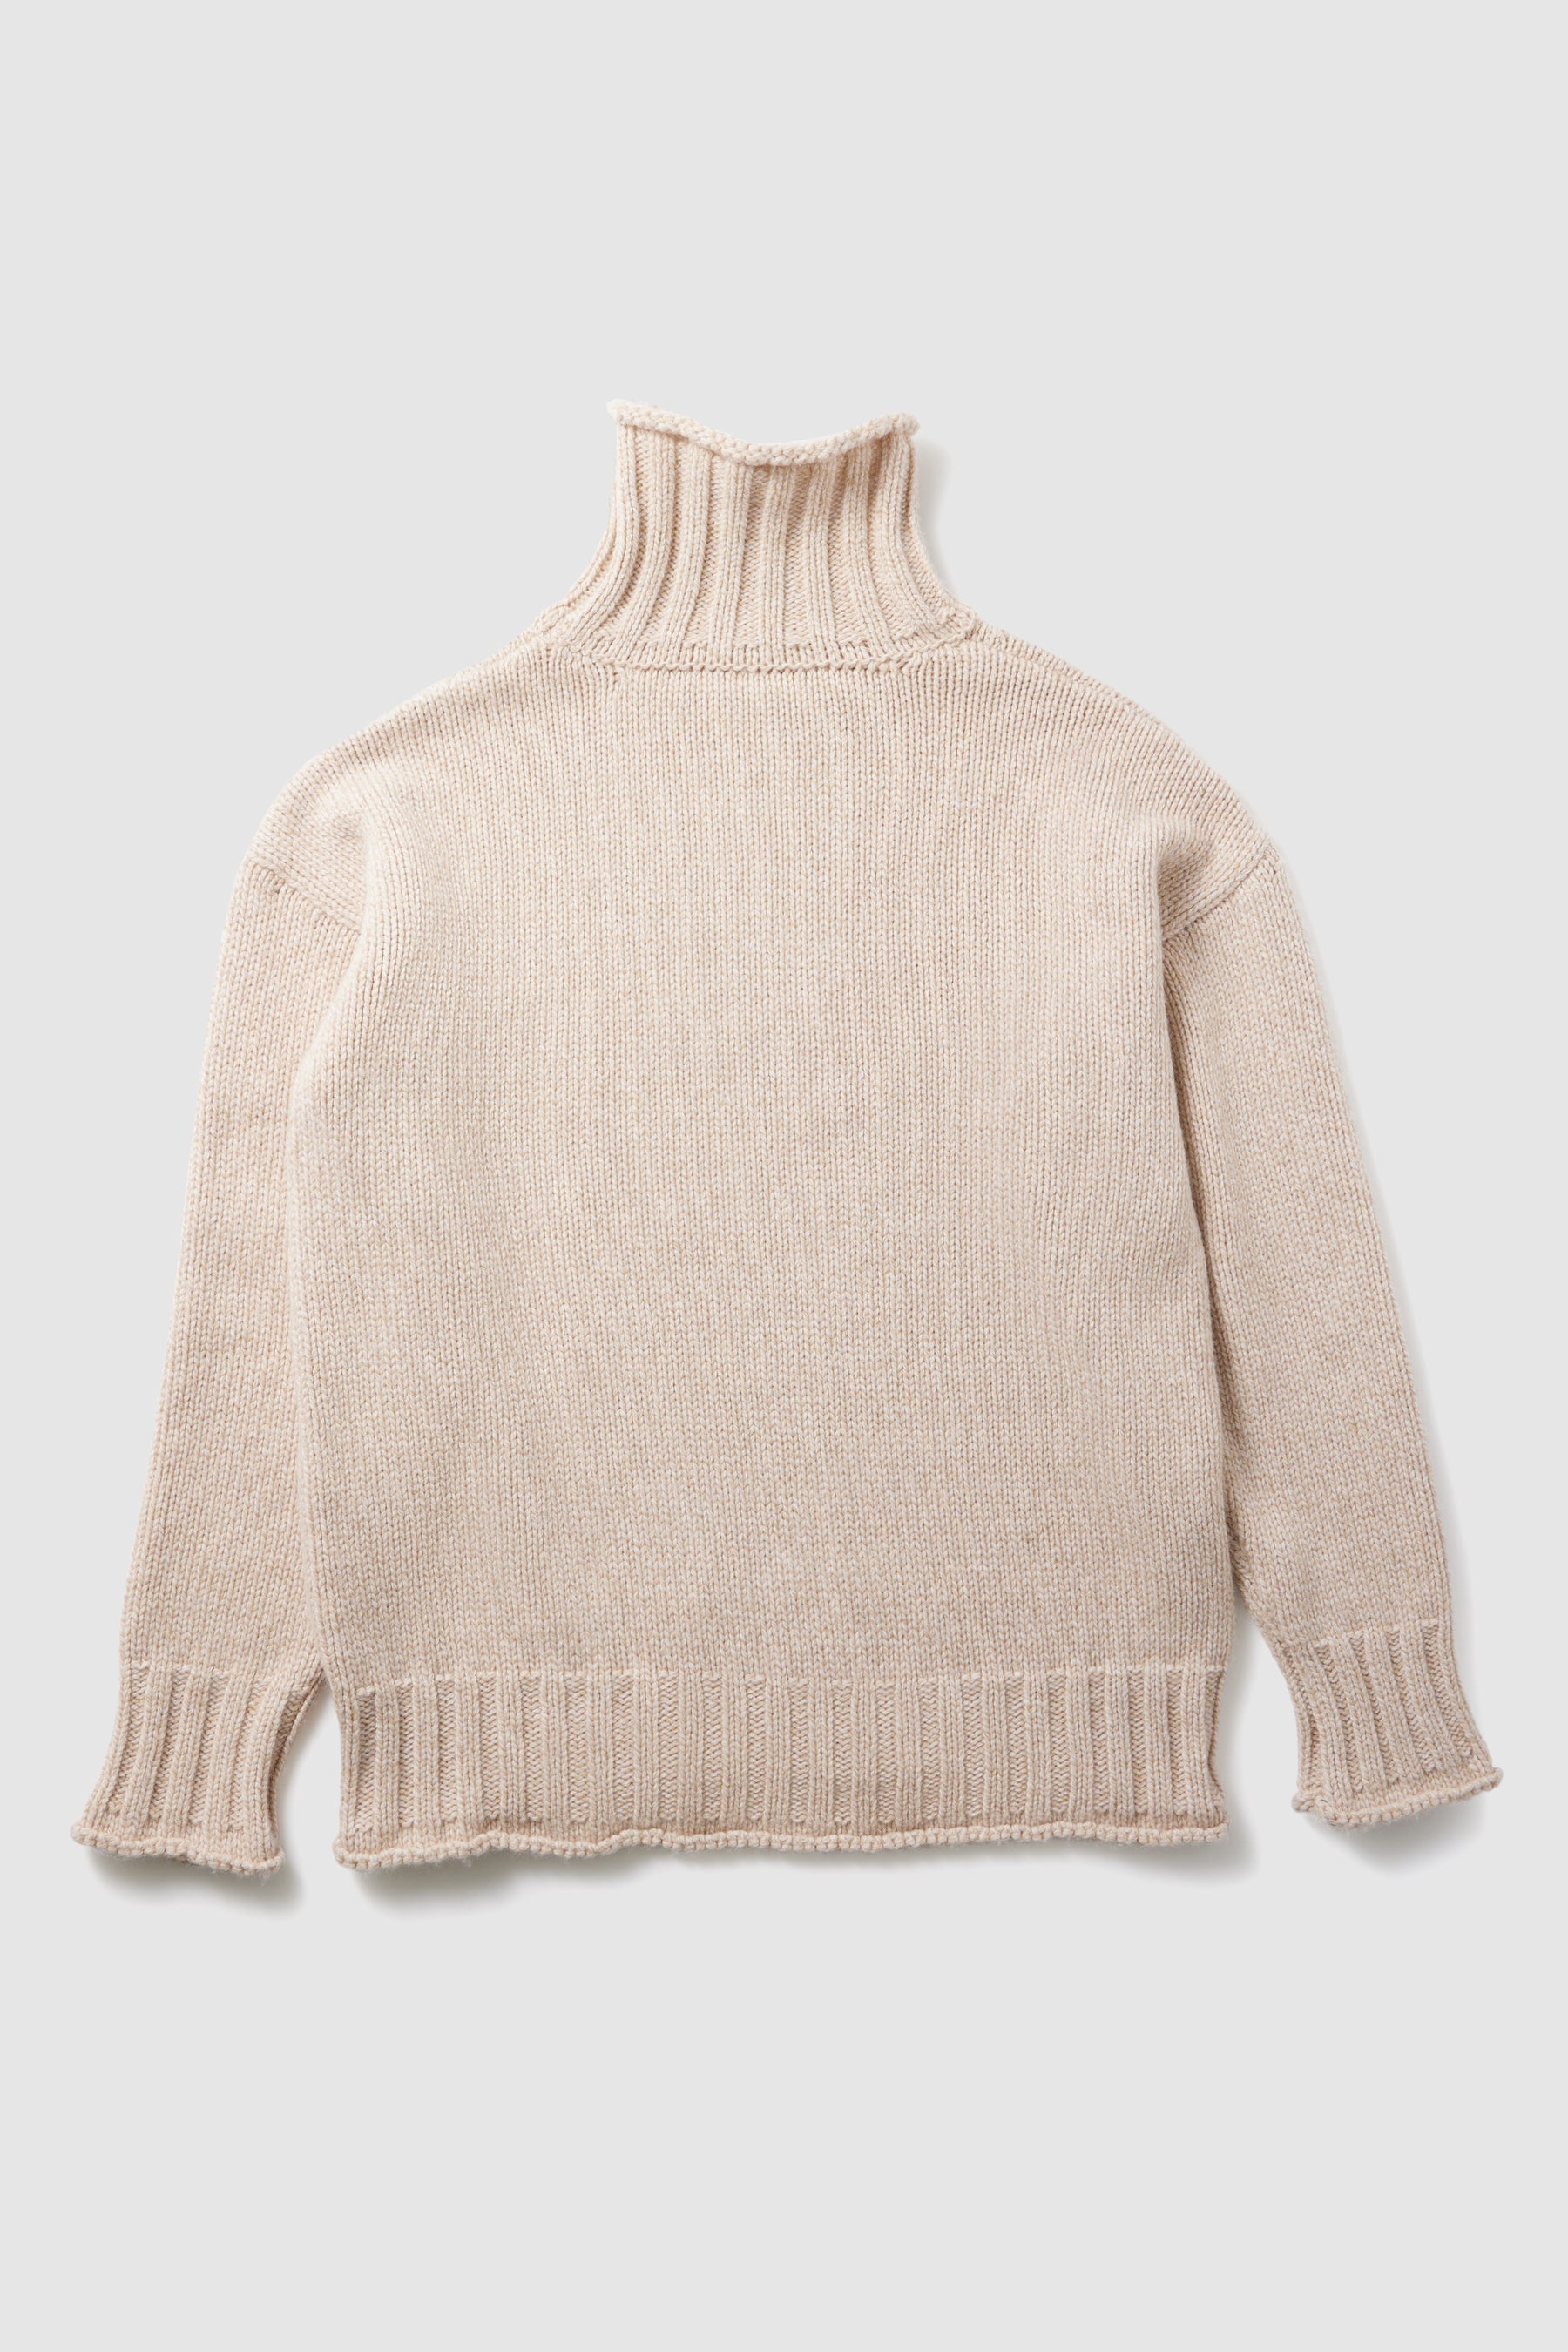 Opal sweater in chalk knit